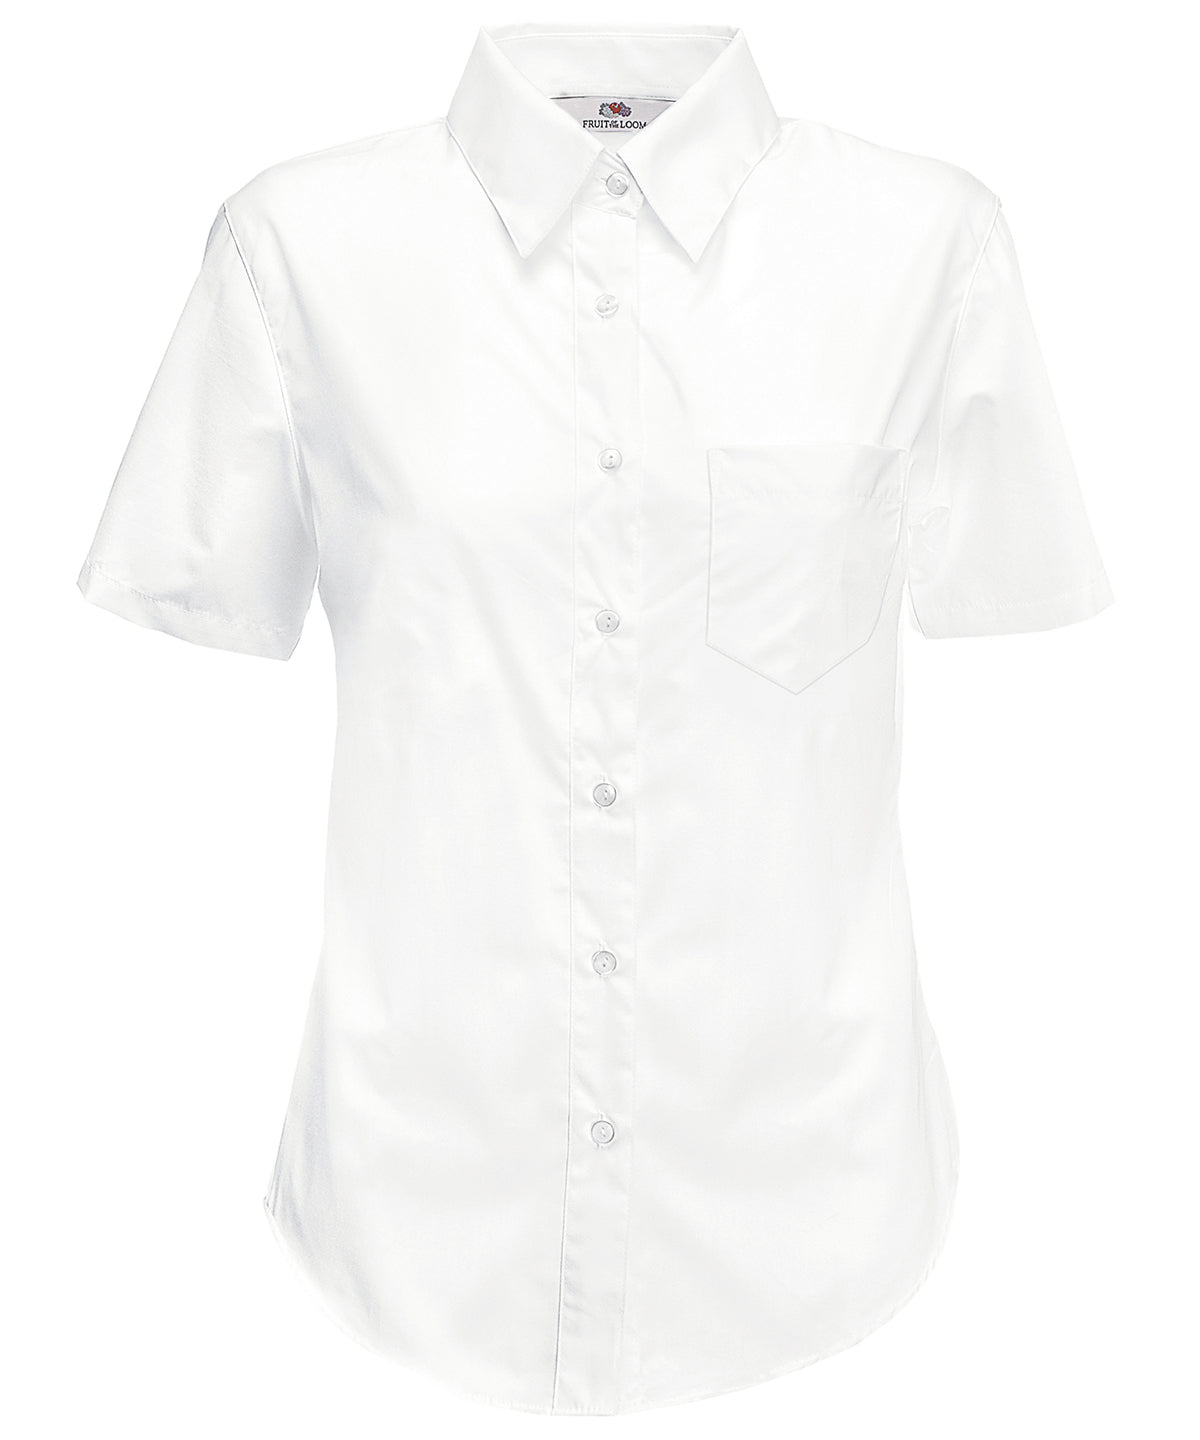 Bolir - Ladyfit Poplin Short Sleeve Shirt